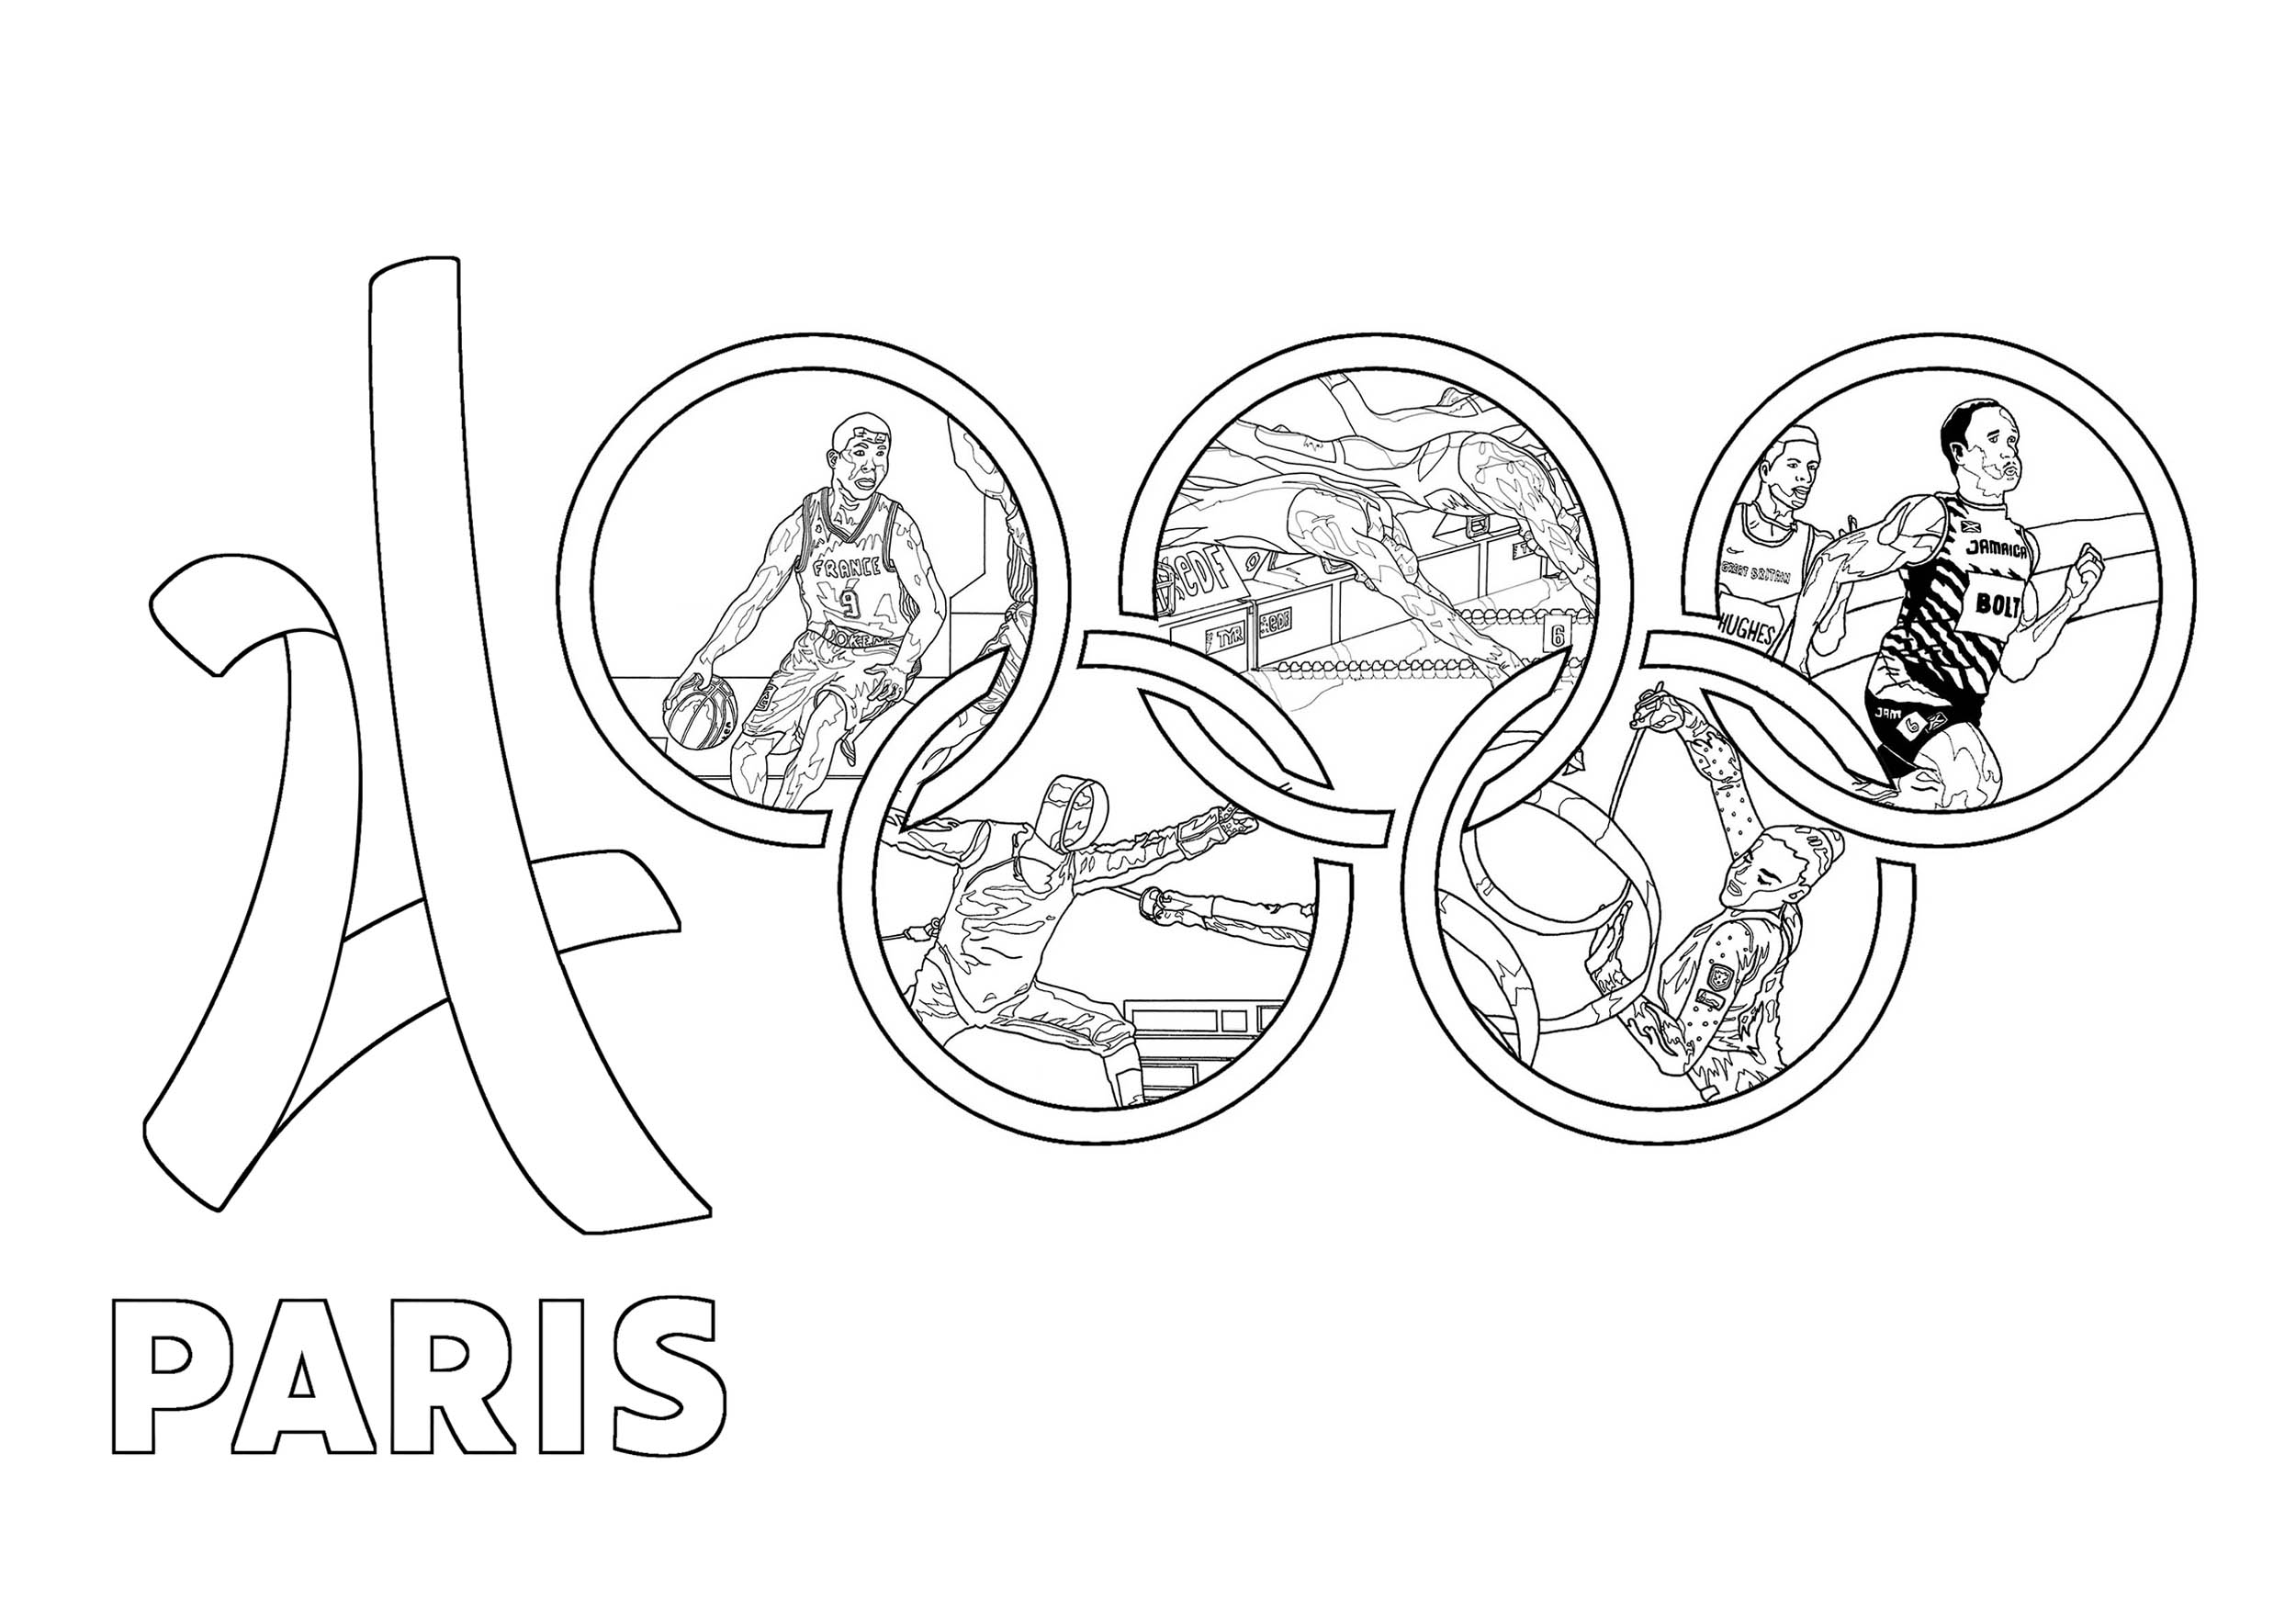 Coloriage réalisé pour les Jeux Olympiques d'été de 2014 à Paris : Logo officiel et divers sports intégrés dans les Anneaux olympiques